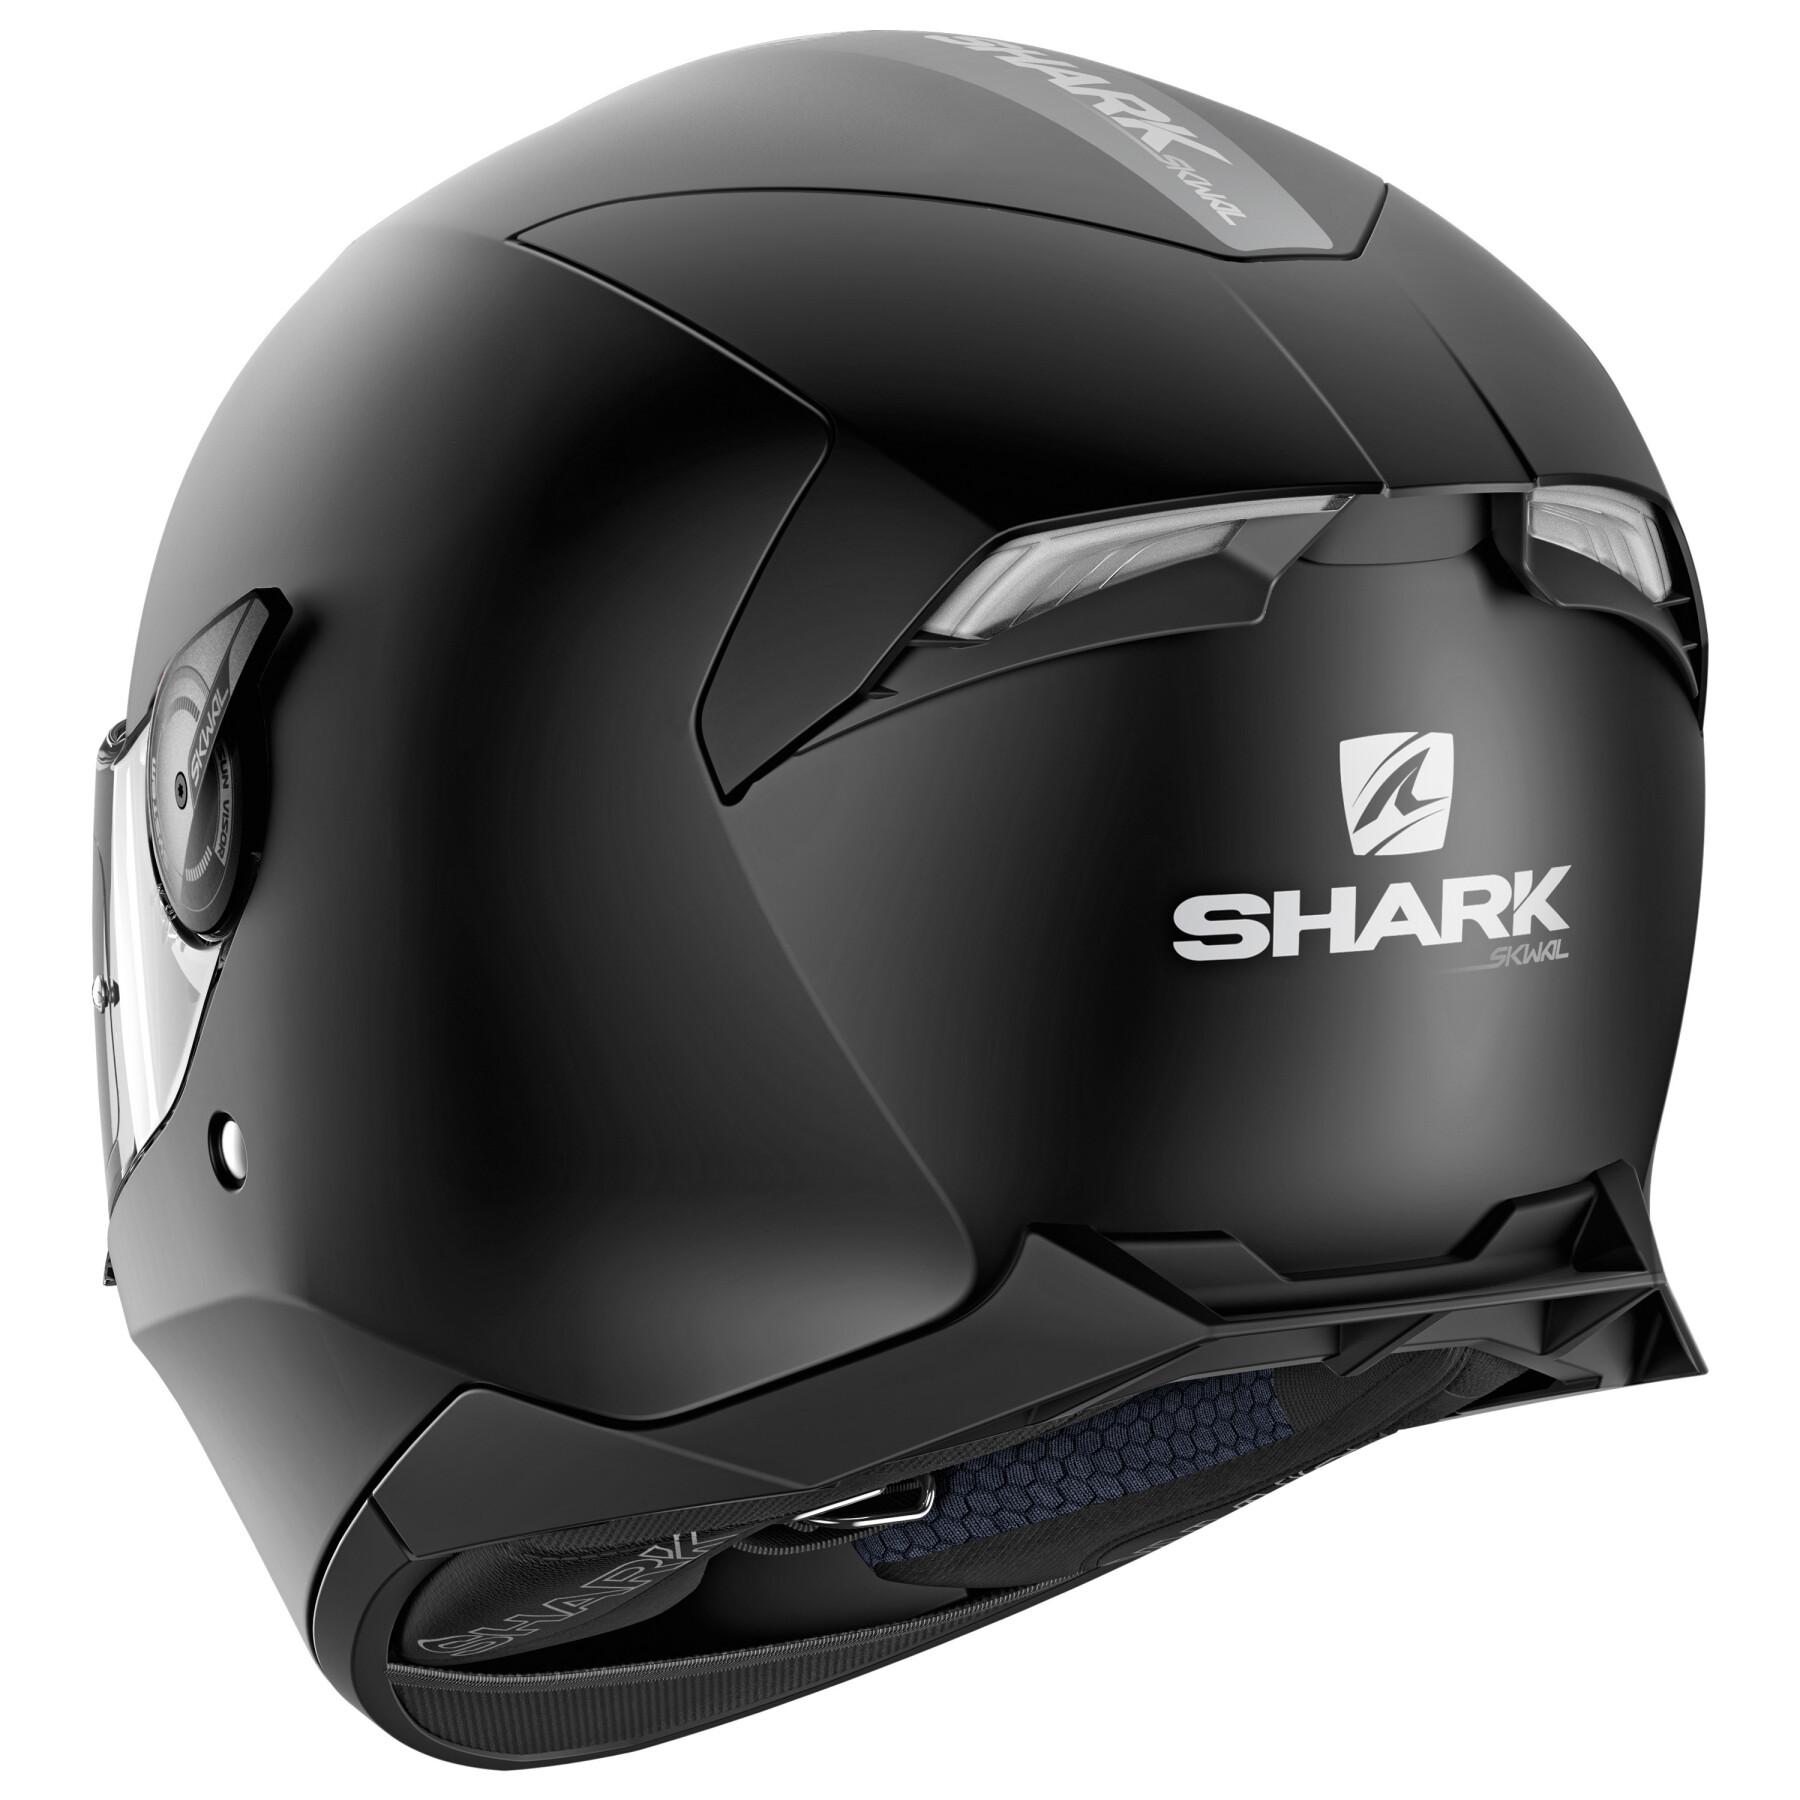 Full face motorcycle helmet Shark skwal 2 blank wht led